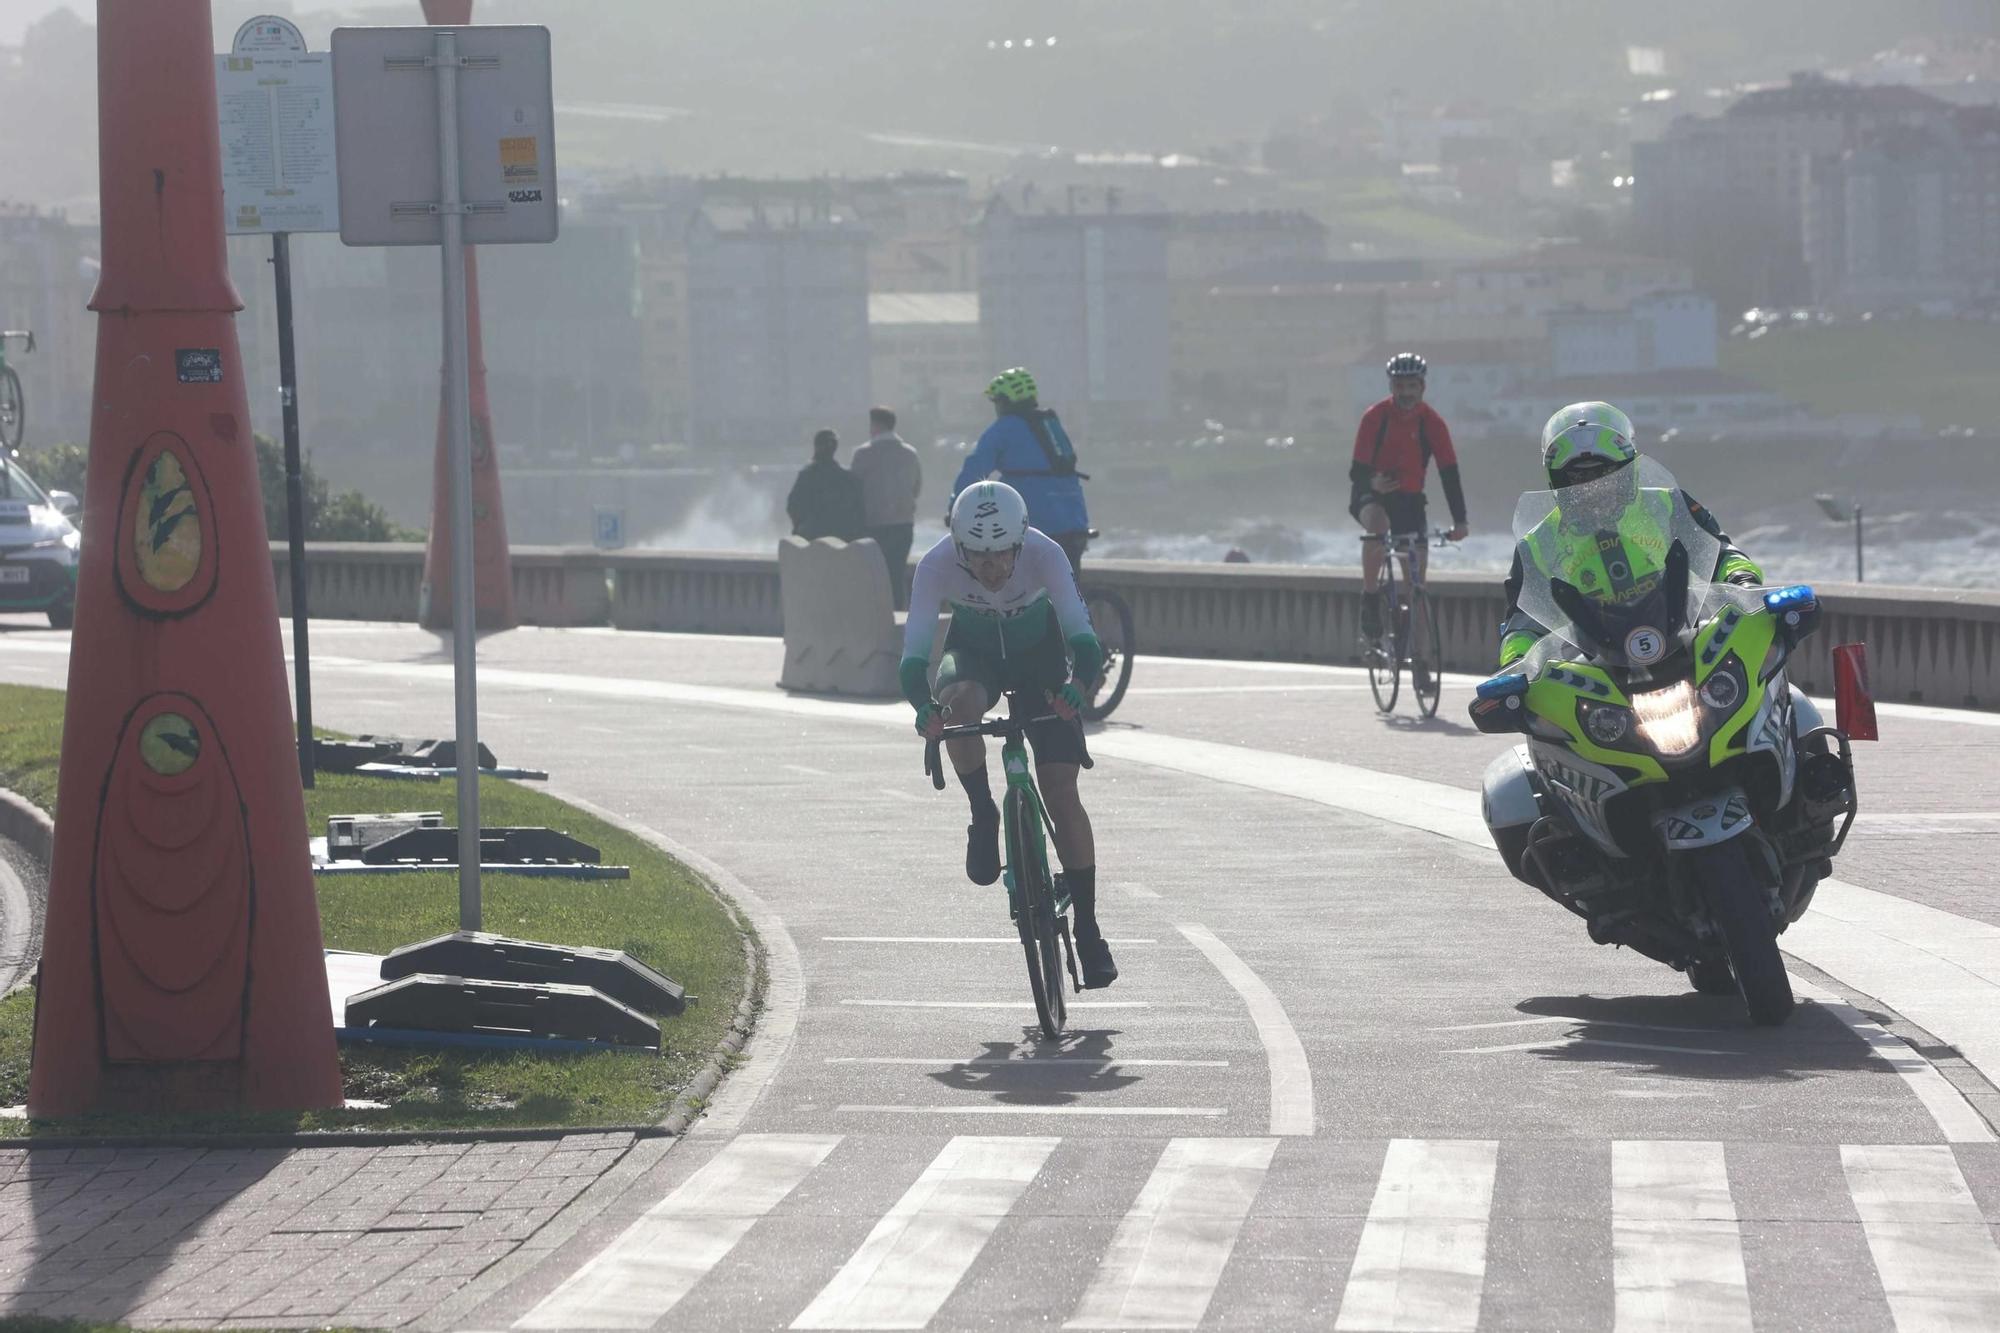 El joven corredor Joshua Tarling se impone en la contrarreloj inaugural de O Gran Camiño en A Coruña